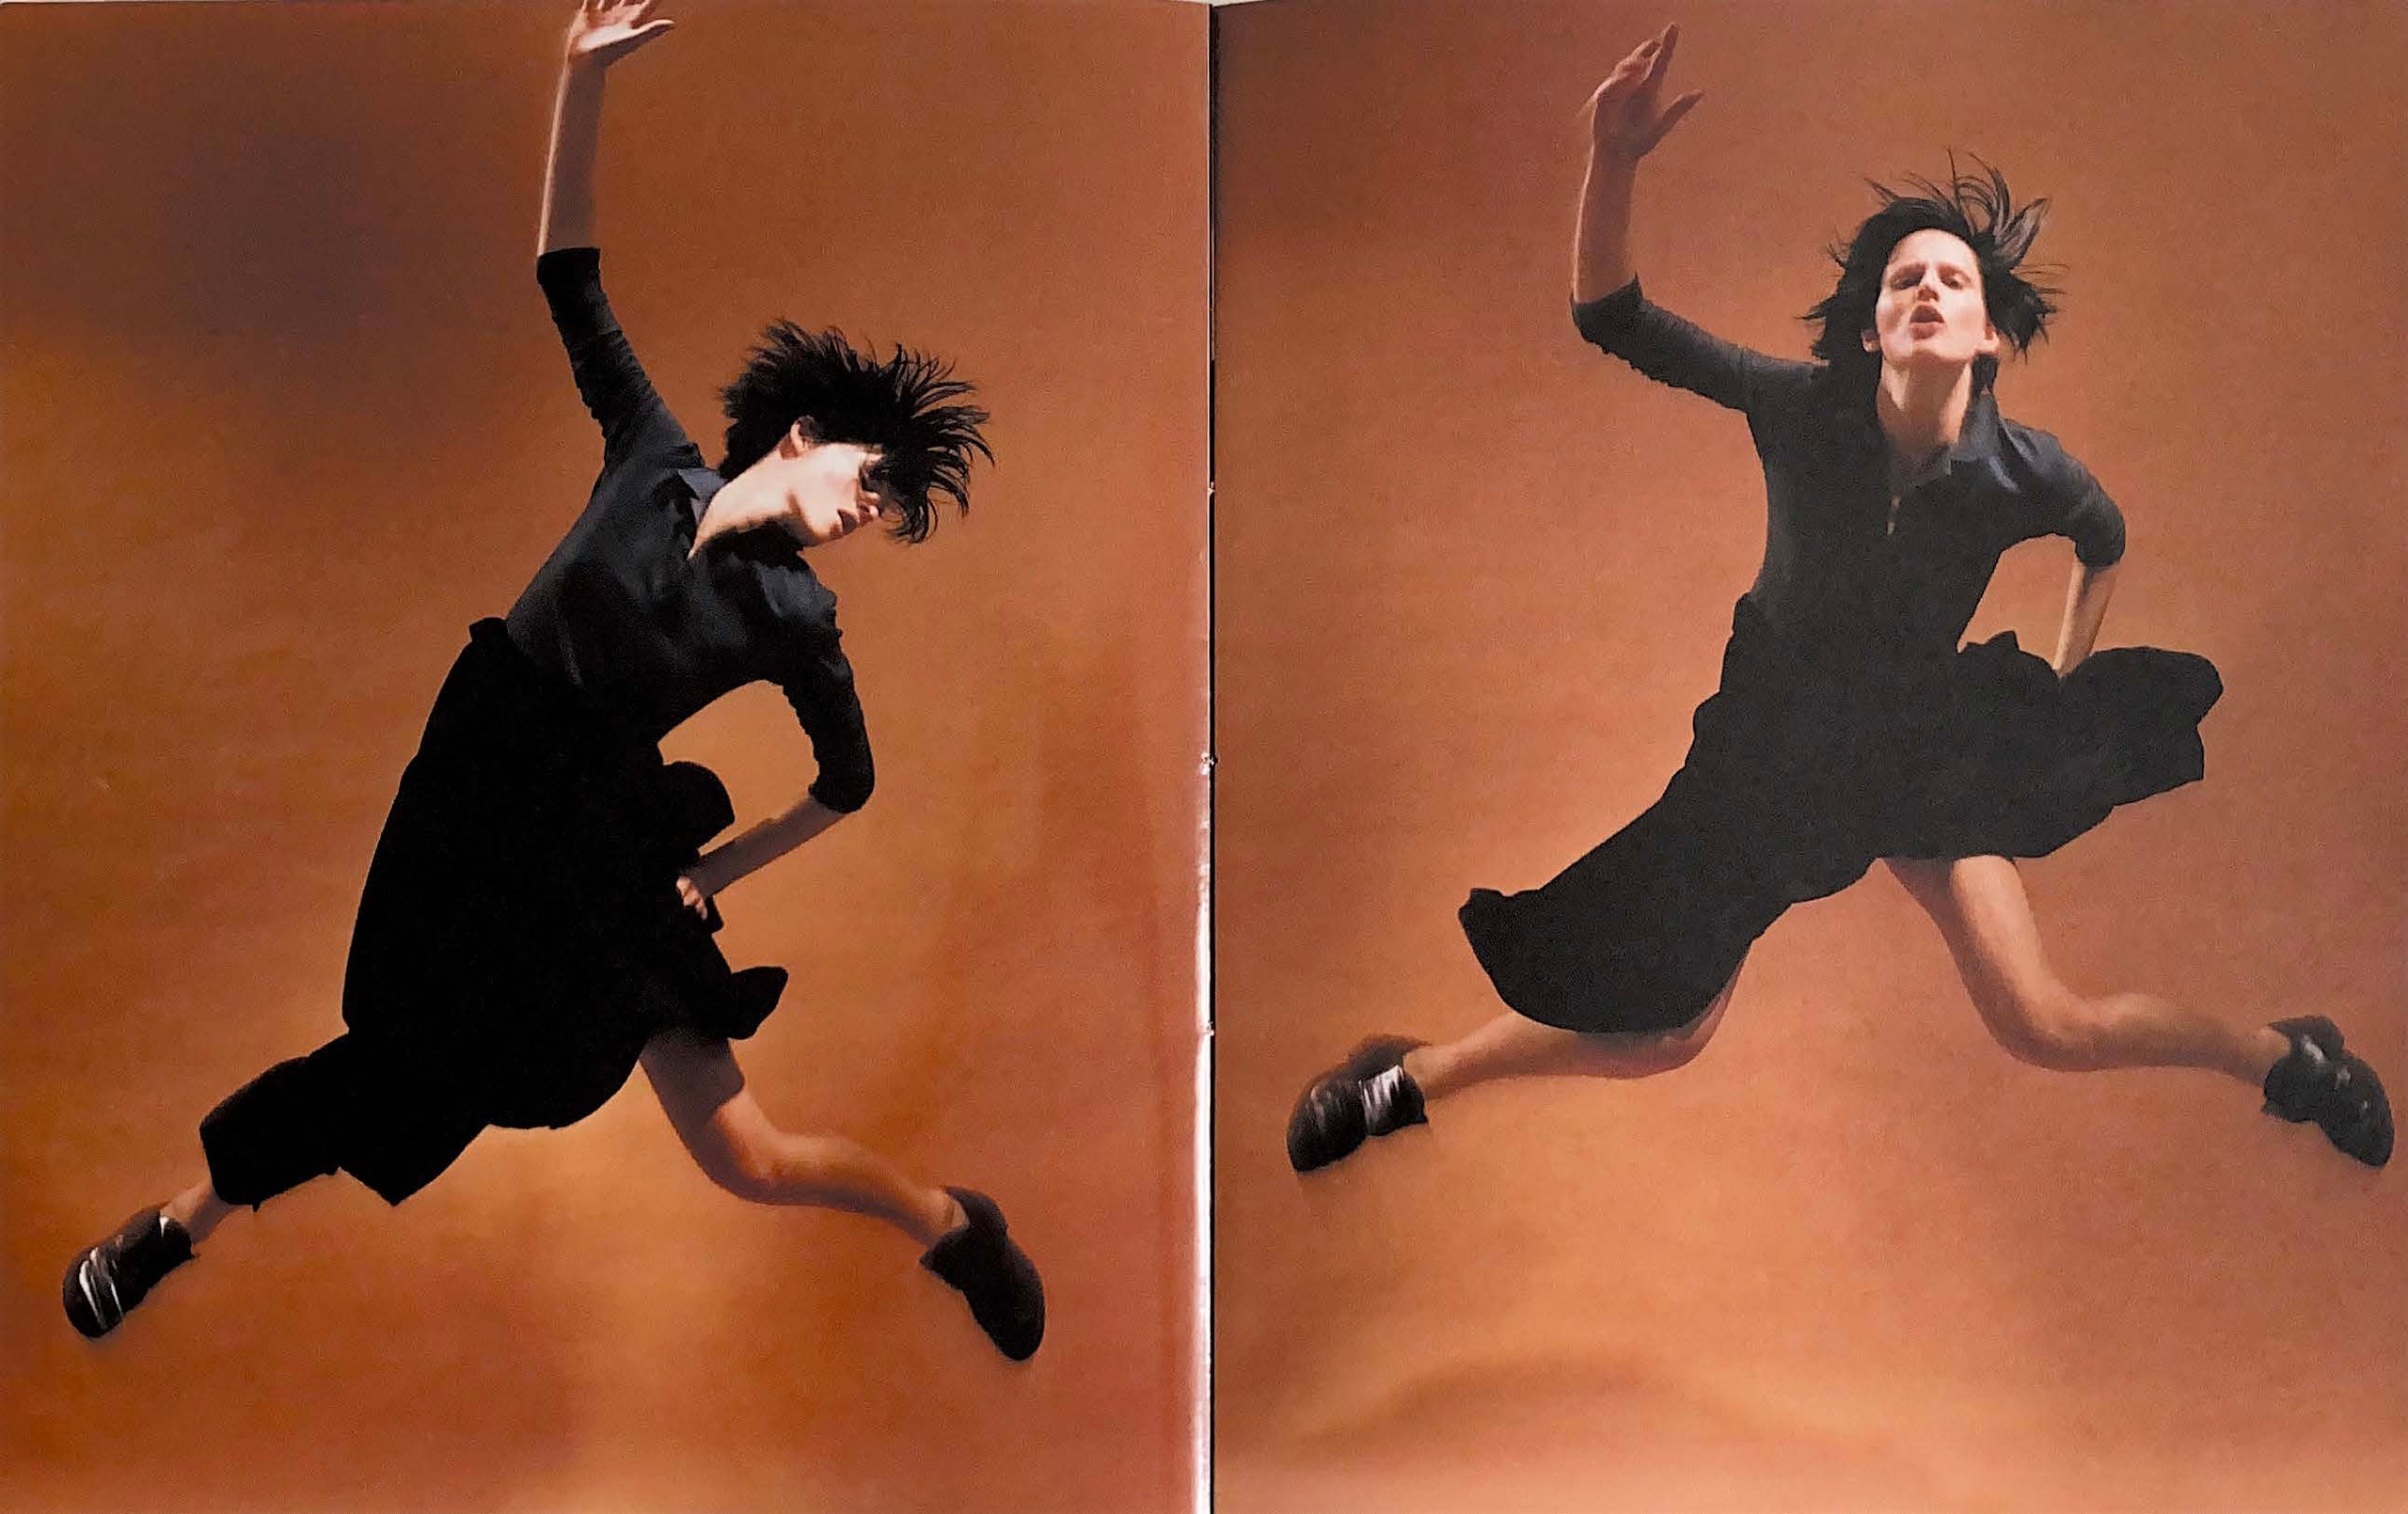 Yohji Yamamoto Fall/Winter 1995-1996 Collection Catalogue